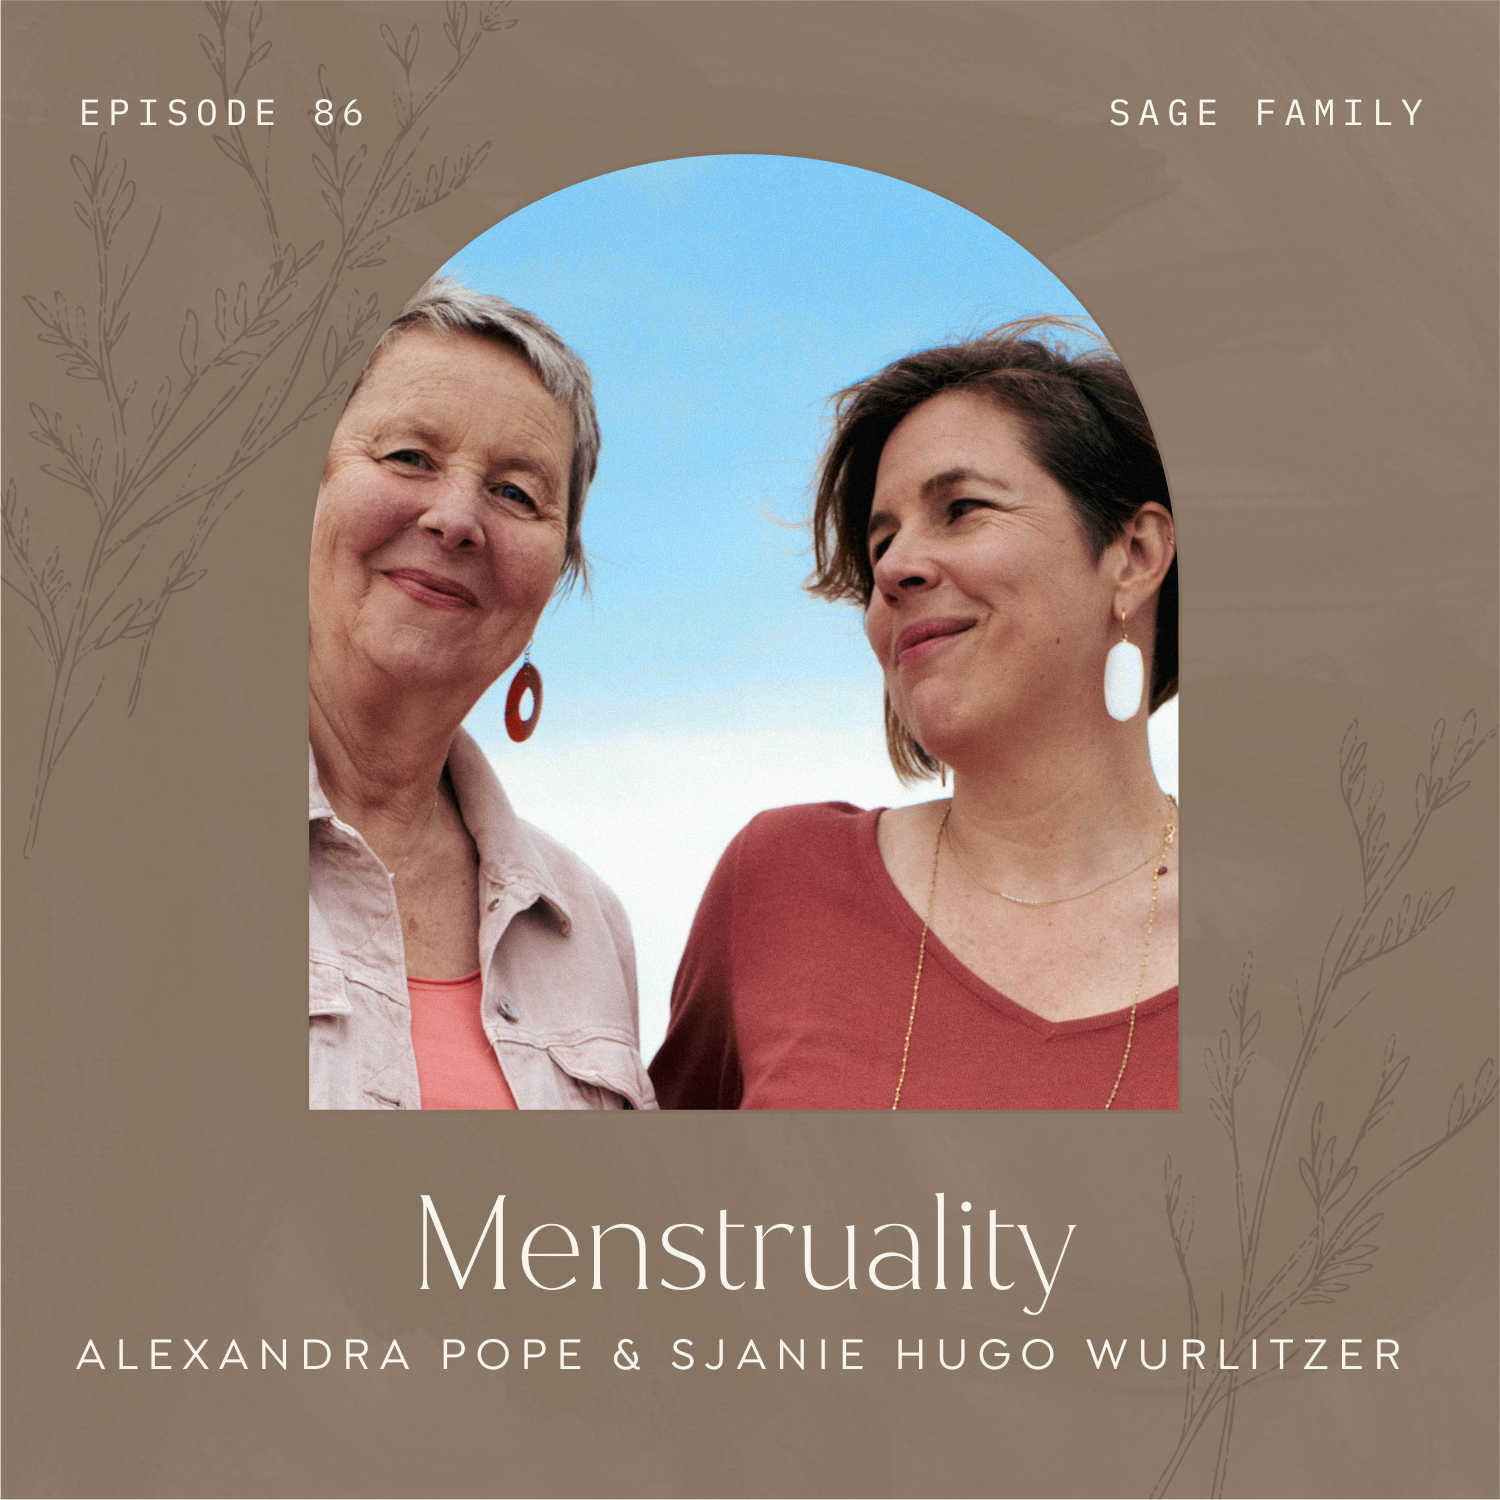 Menstruality with Alexandra Pope & Sjanie Hugo Wurlitzer